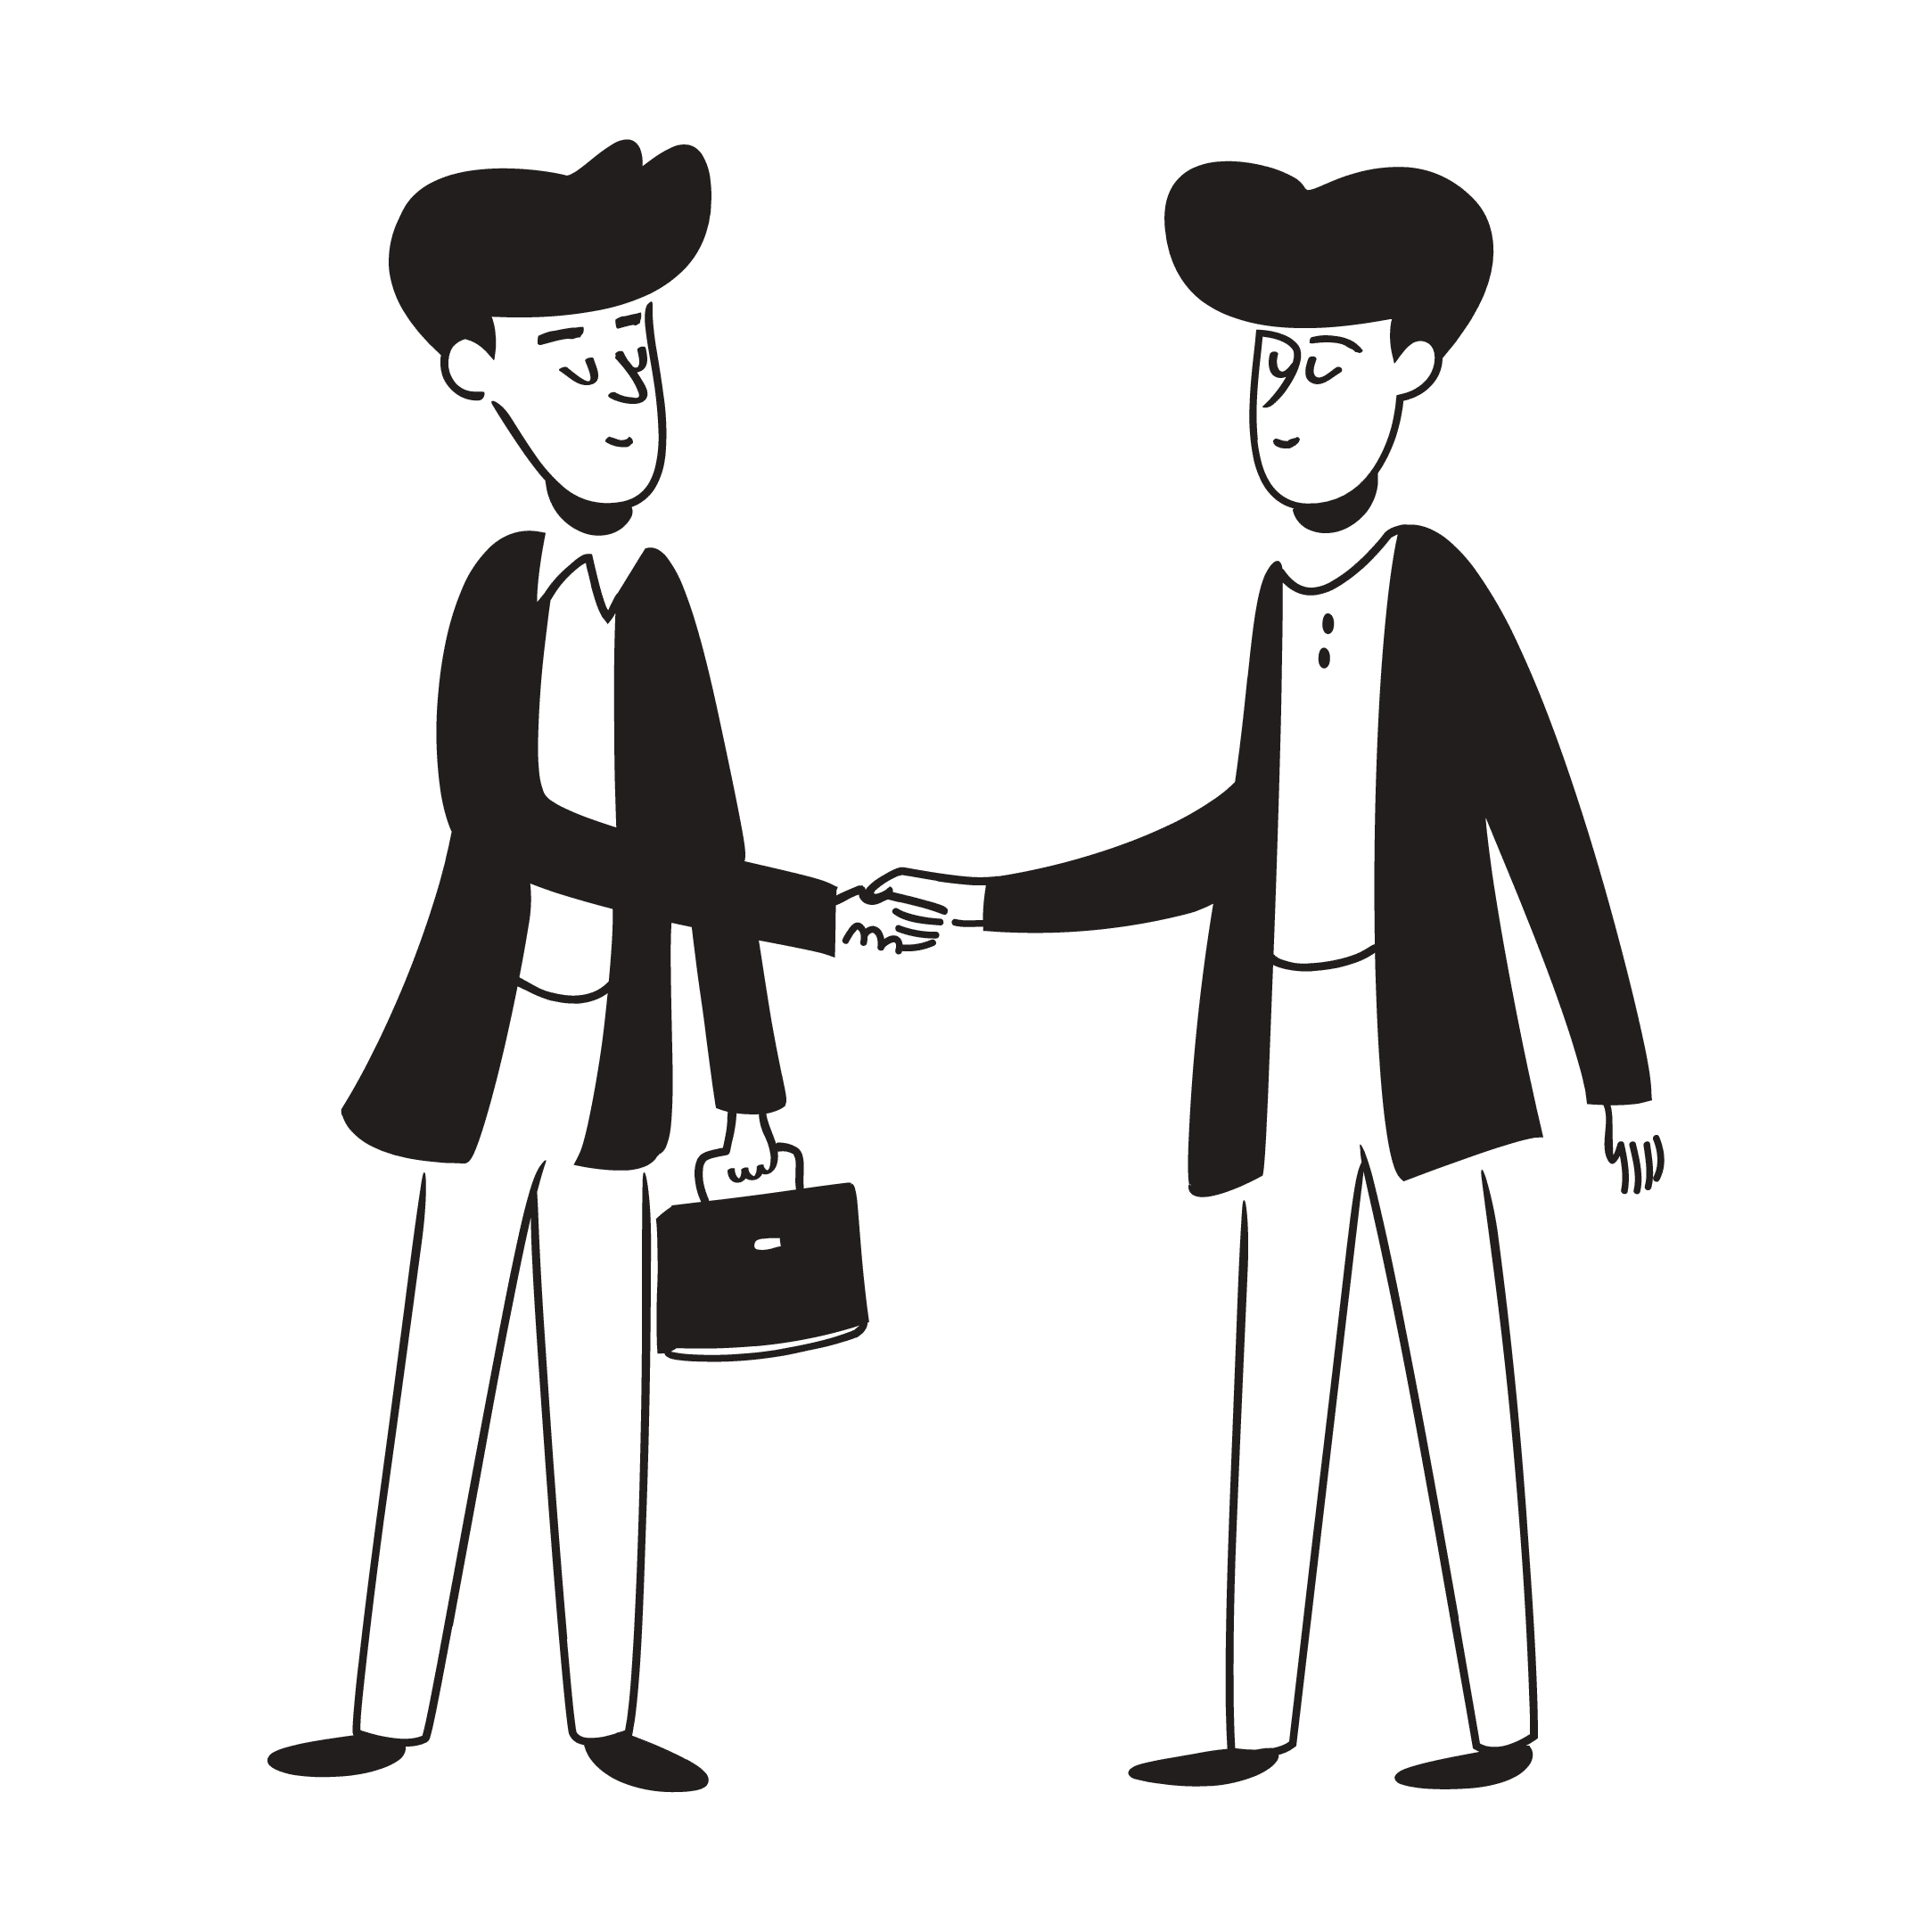 Illustrasjonsbilde i sort/hvitt som viser to menn som håndhilser.